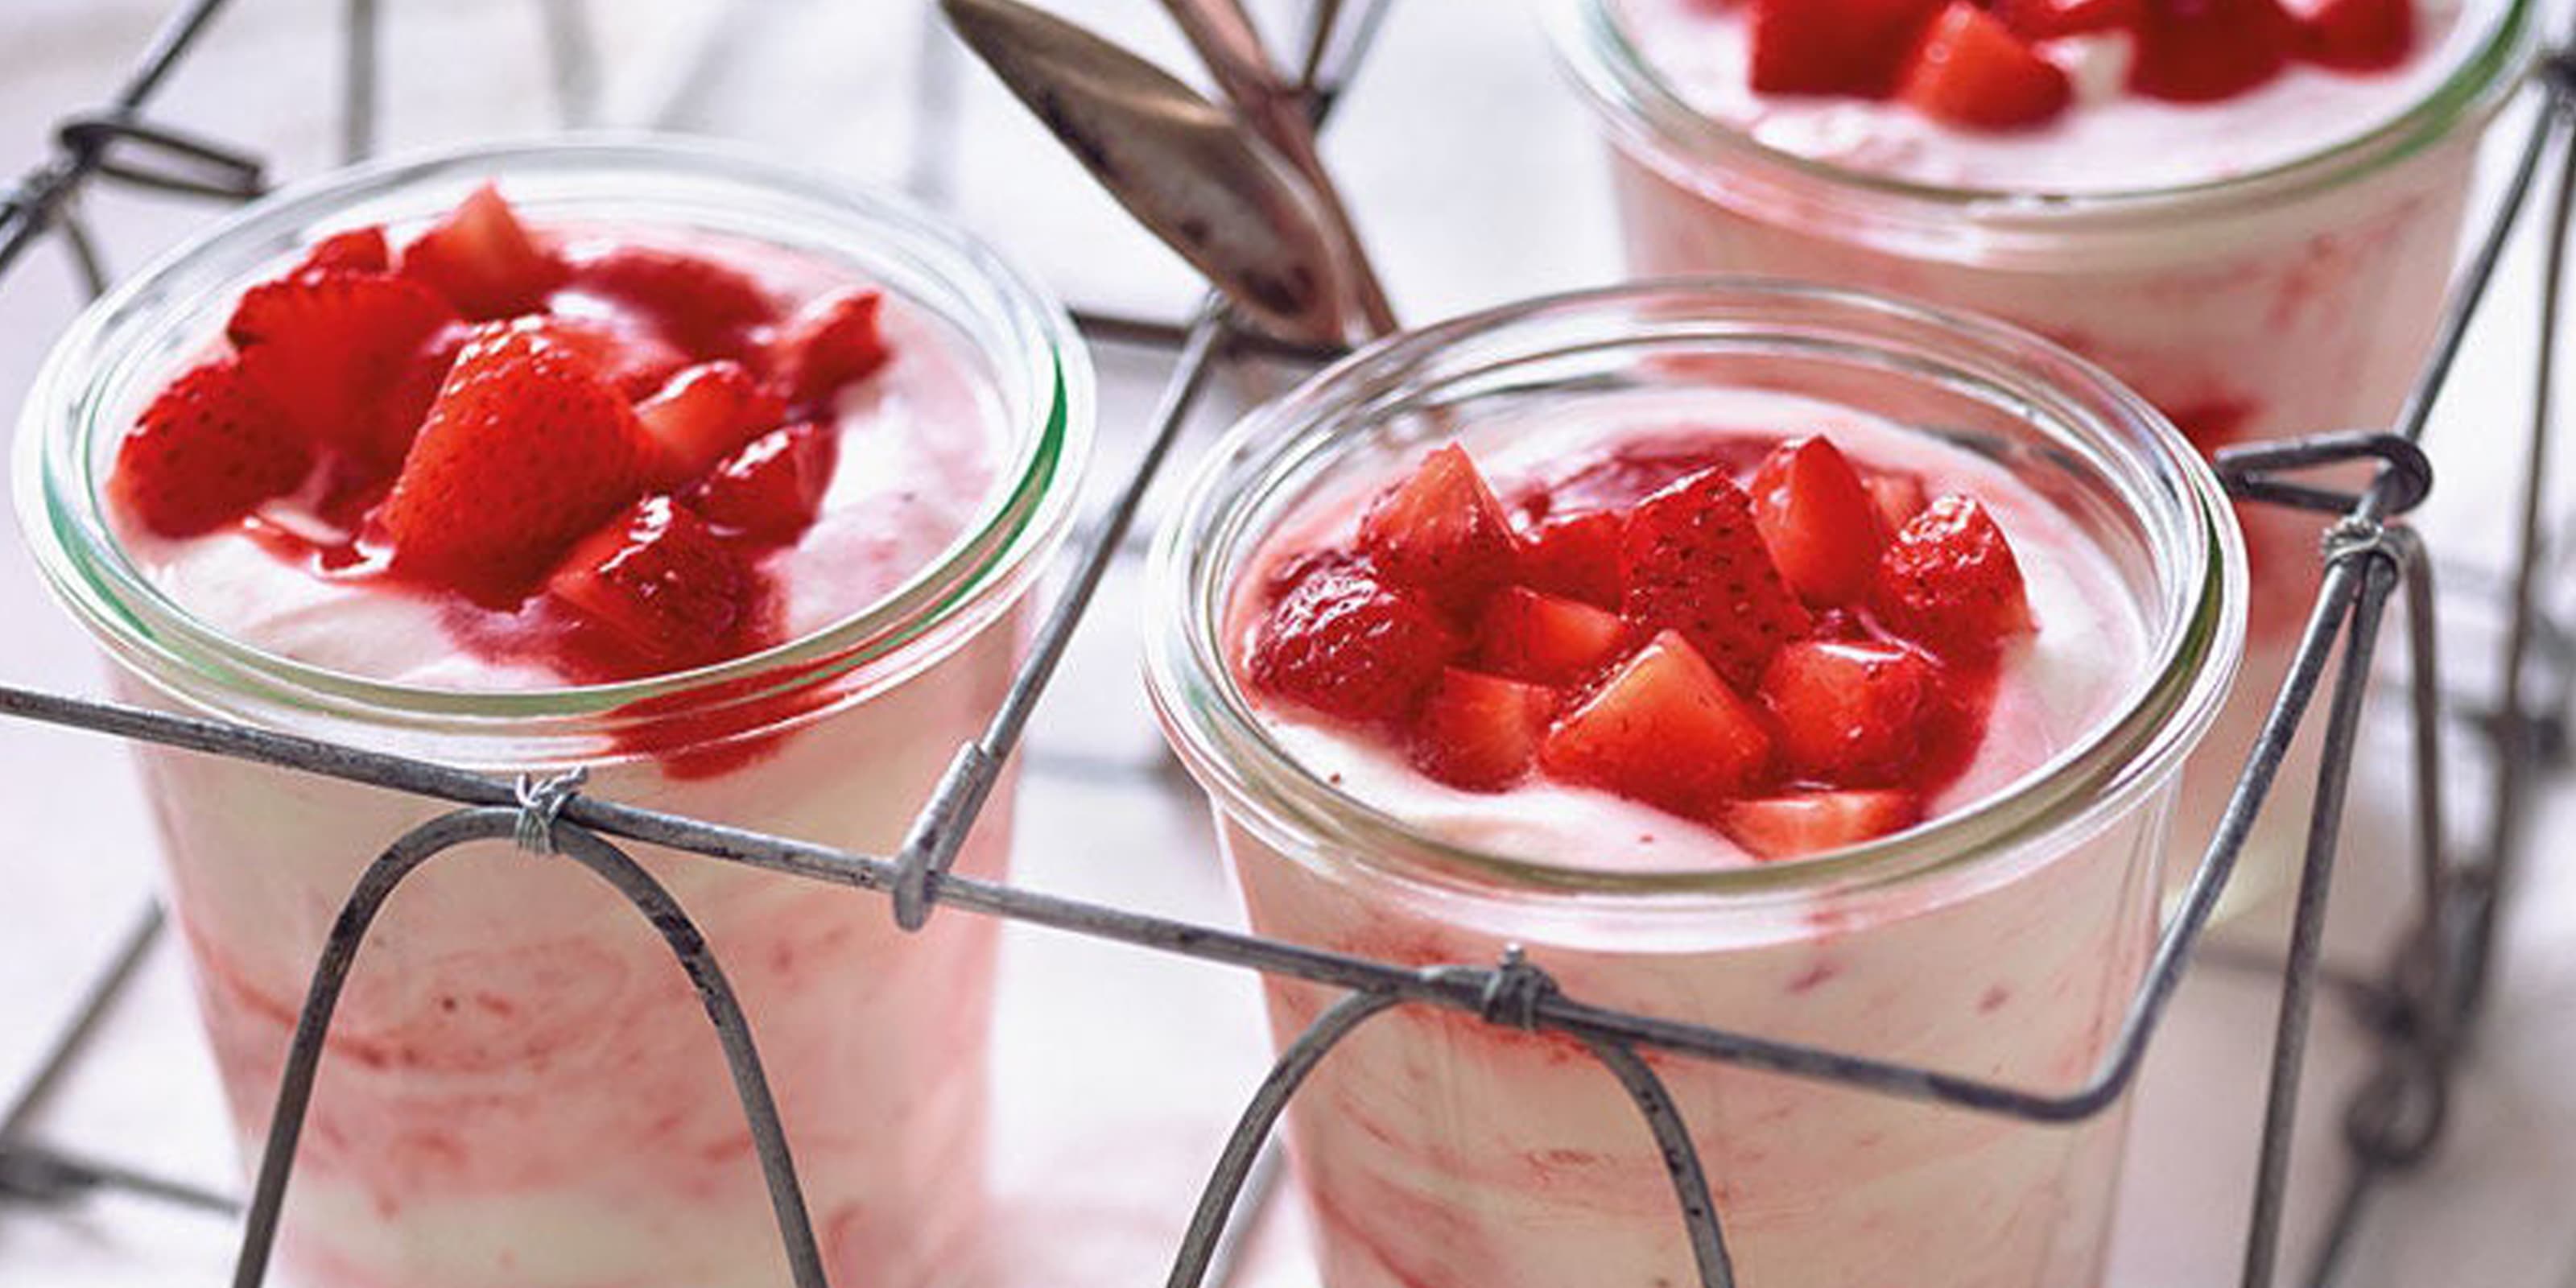 Erdbeermousse mit frischen Erdbeeren in Gläsern.